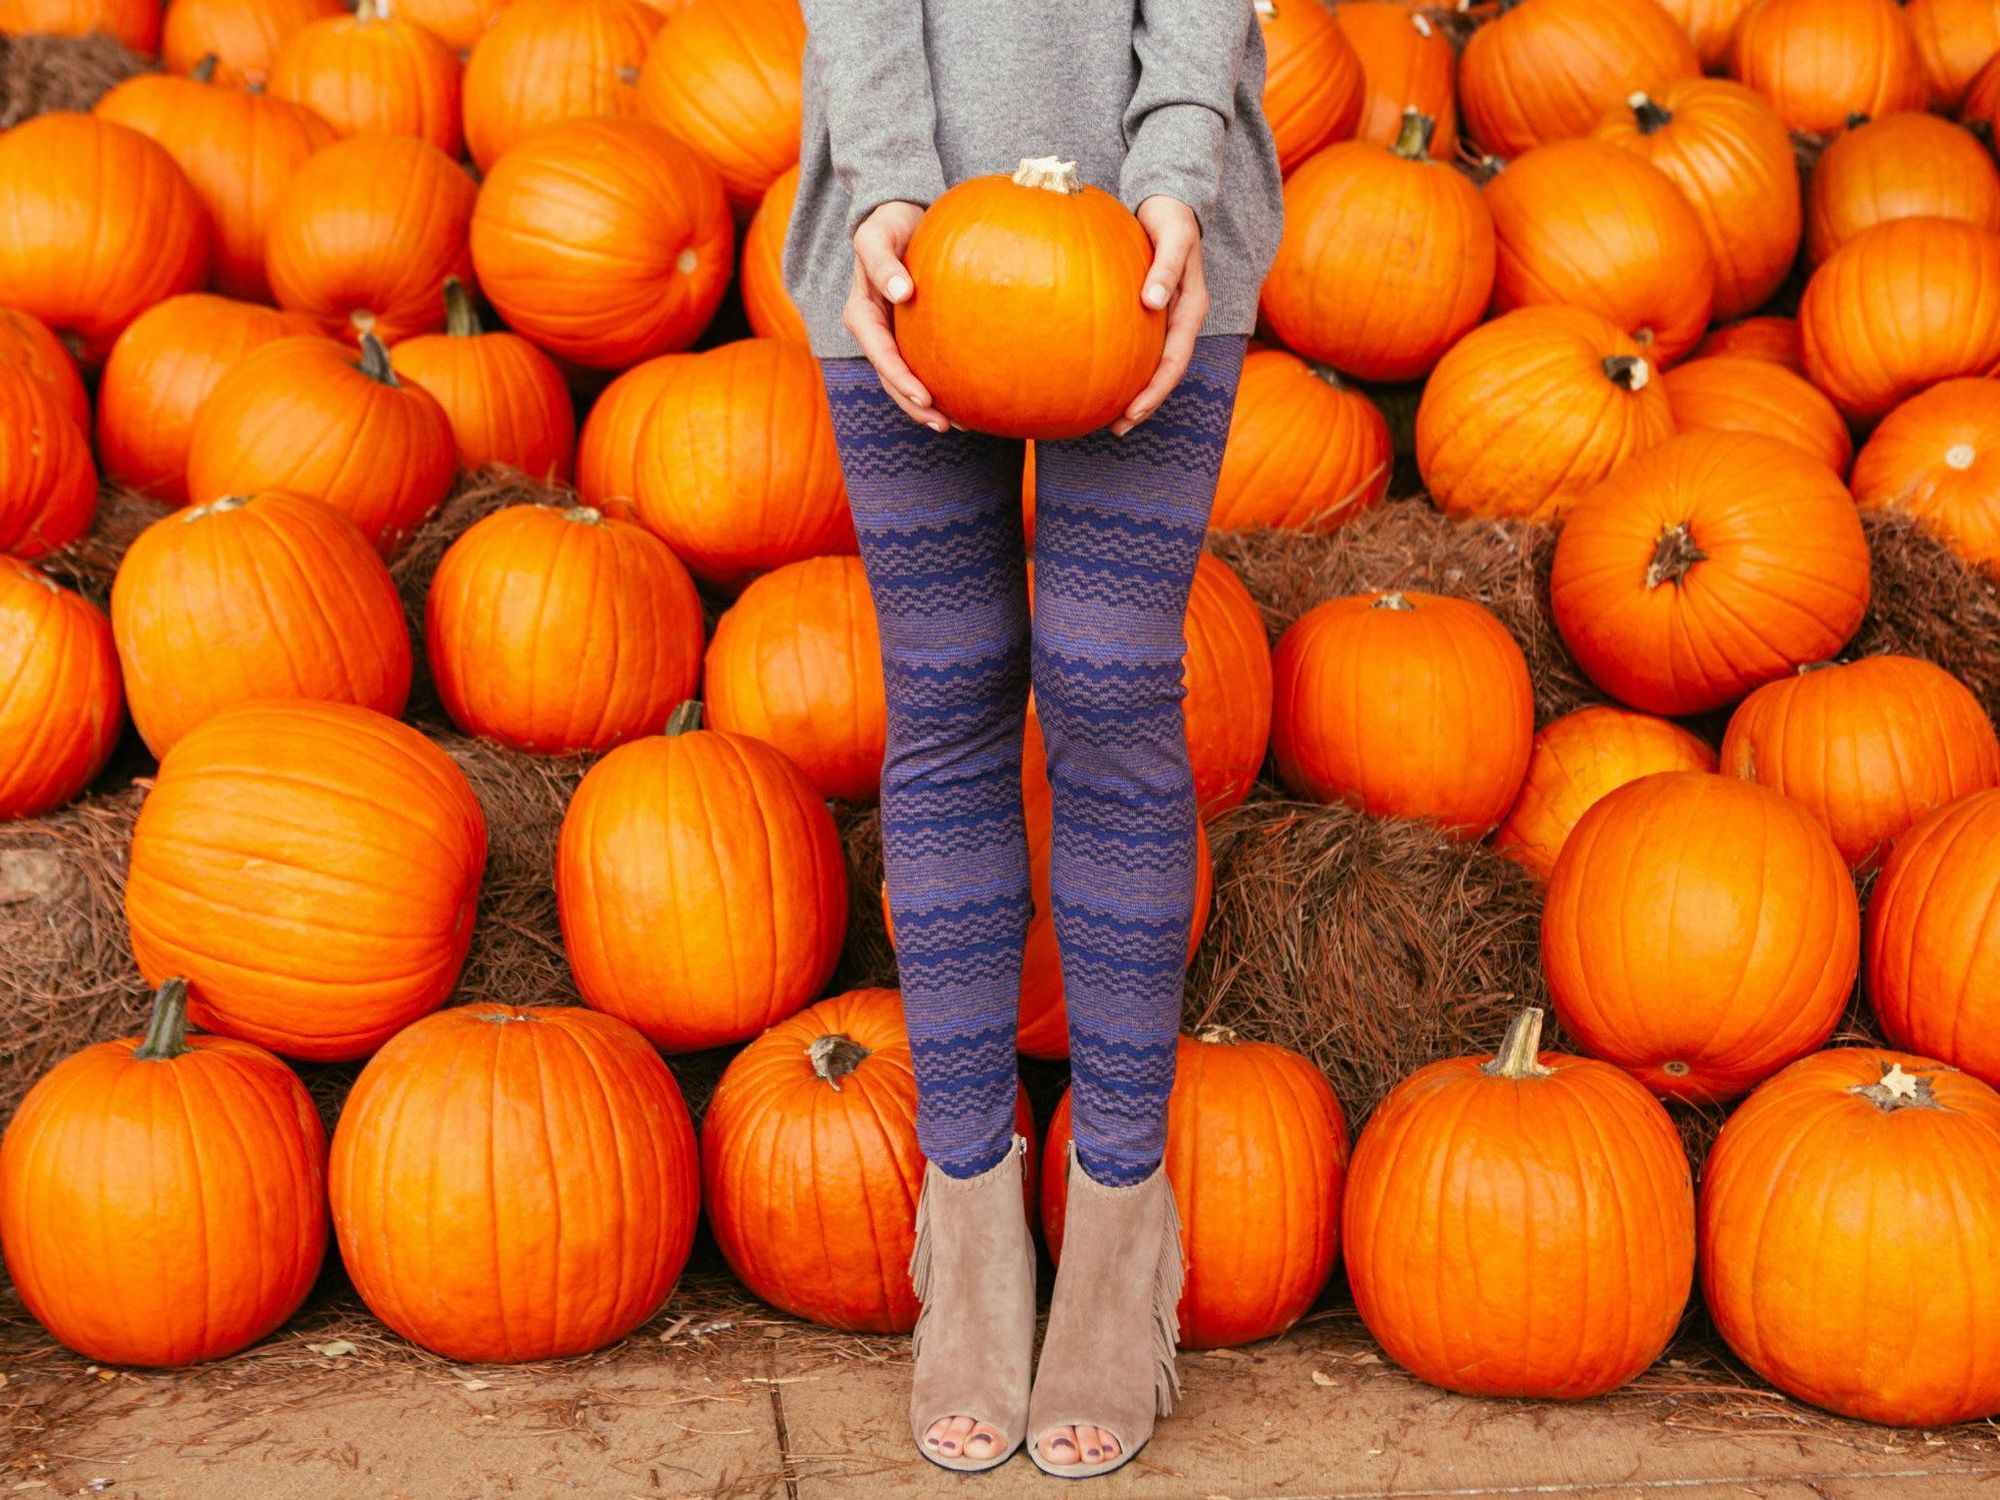 Women standing in a pumpkin patch